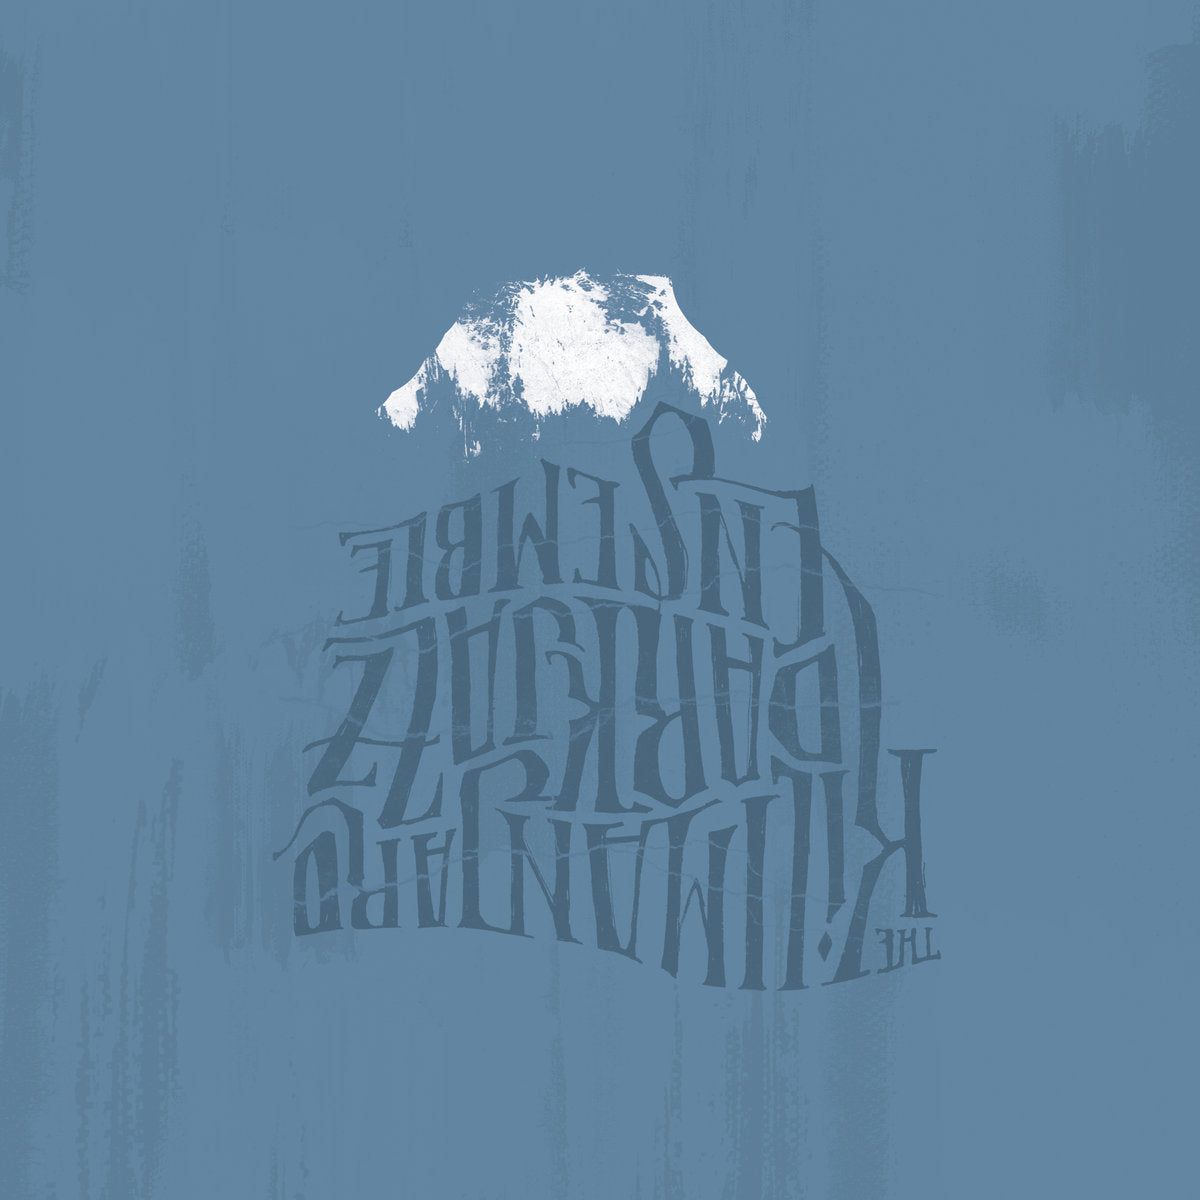 THE KILIMANJARO DARKJAZZ ENSEMBLE - THE KILIMANJARO DARKJAZZ ENSEMBLE Vinyl 2xLP